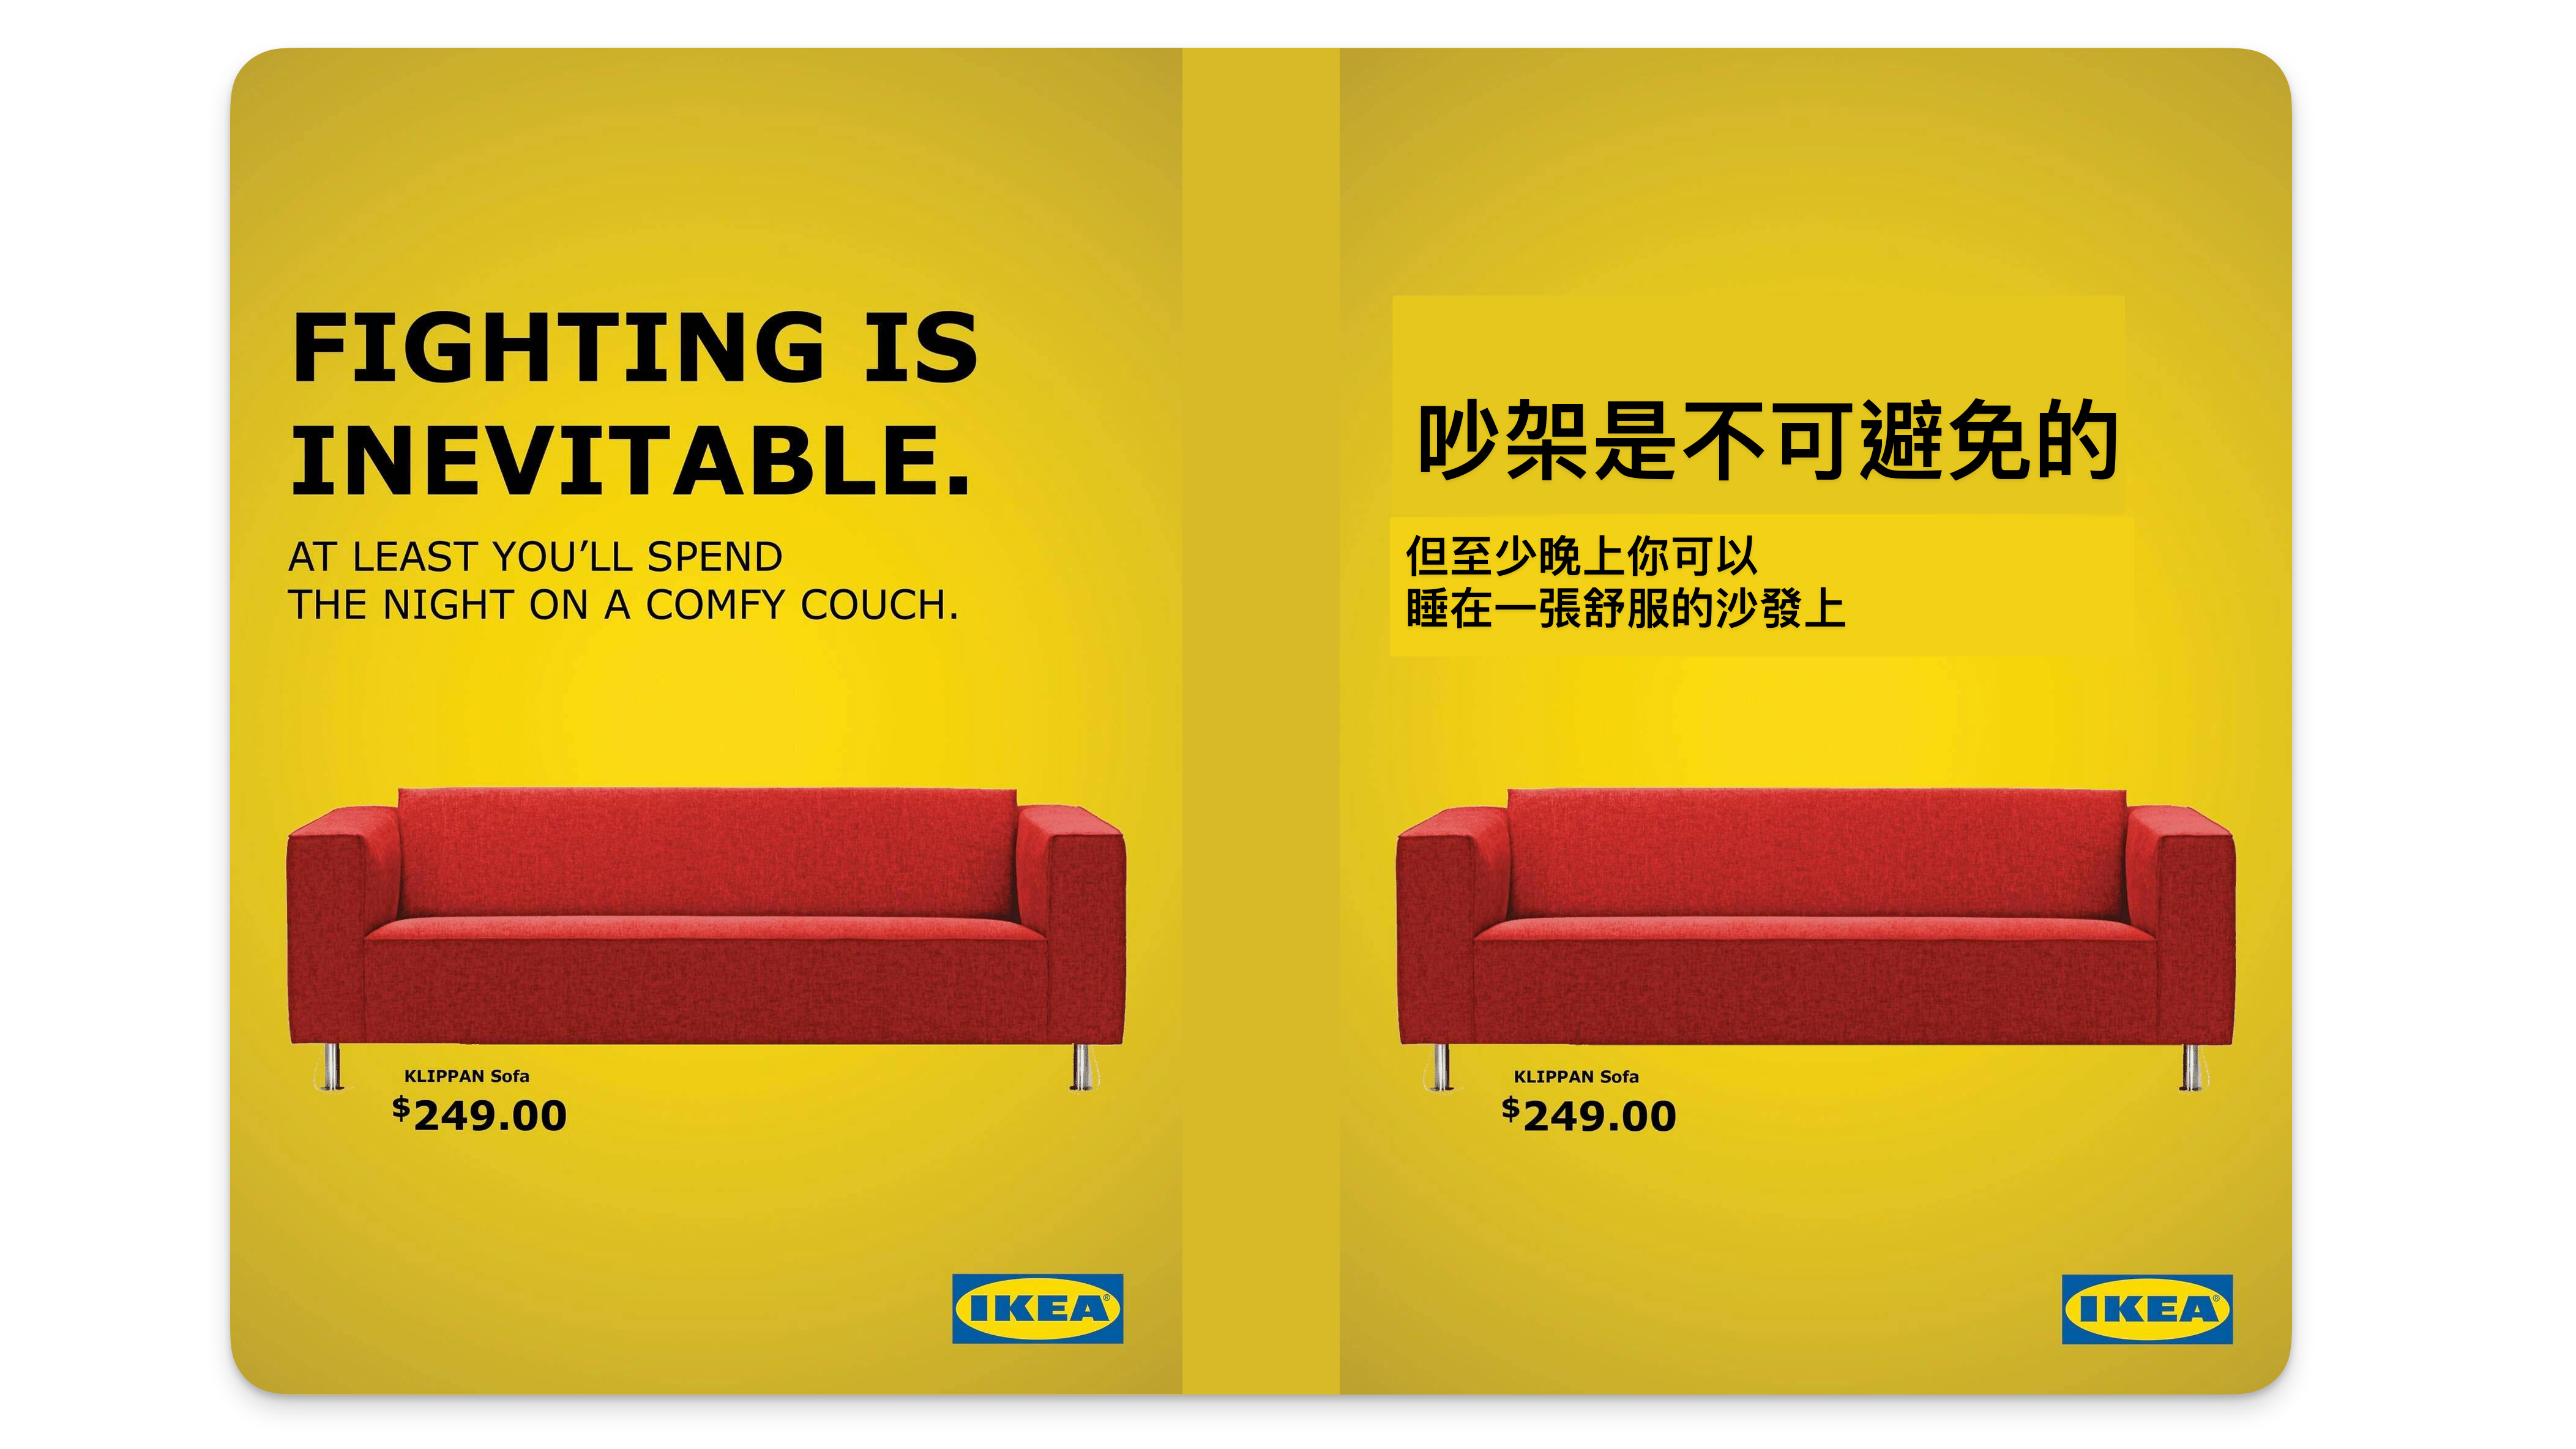 Shlomo Genchin 做的 IKEA 廣告